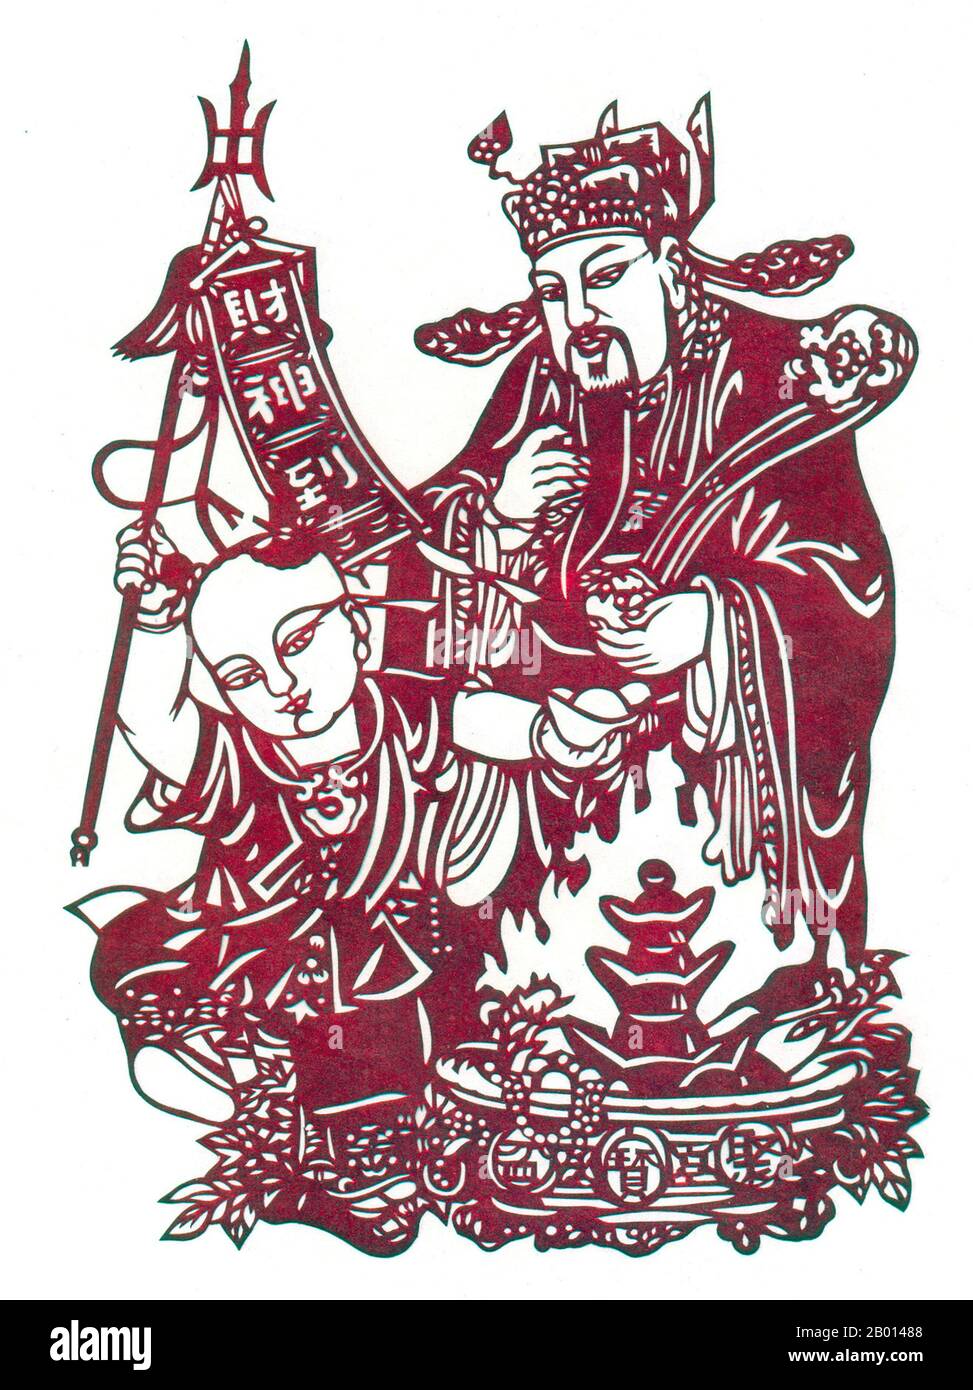 Cina: CAI Shen (Wade–Giles: Tsai Shen; cantonese: Choy Sun, Hakka: Choy Sin) è il Dio cinese della ricchezza o della prosperità. Taglio di carta, 20 ° secolo. CAI Shen può anche essere indicato come Zhao Gongming (Chao Kung-ming) o Bi Gan (Pi-kan). Anche se Cai Shen iniziò come eroe popolare cinese, poi deificato e venerato da seguaci e ammiratori locali, il Taoismo e il Buddismo pure Land vennero a venerarlo come un dio. Il nome di CAI Shen viene spesso invocato durante le celebrazioni del capodanno cinese. Viene spesso raffigurato cavalcando una tigre nera e tenendo un'asta d'oro. Foto Stock